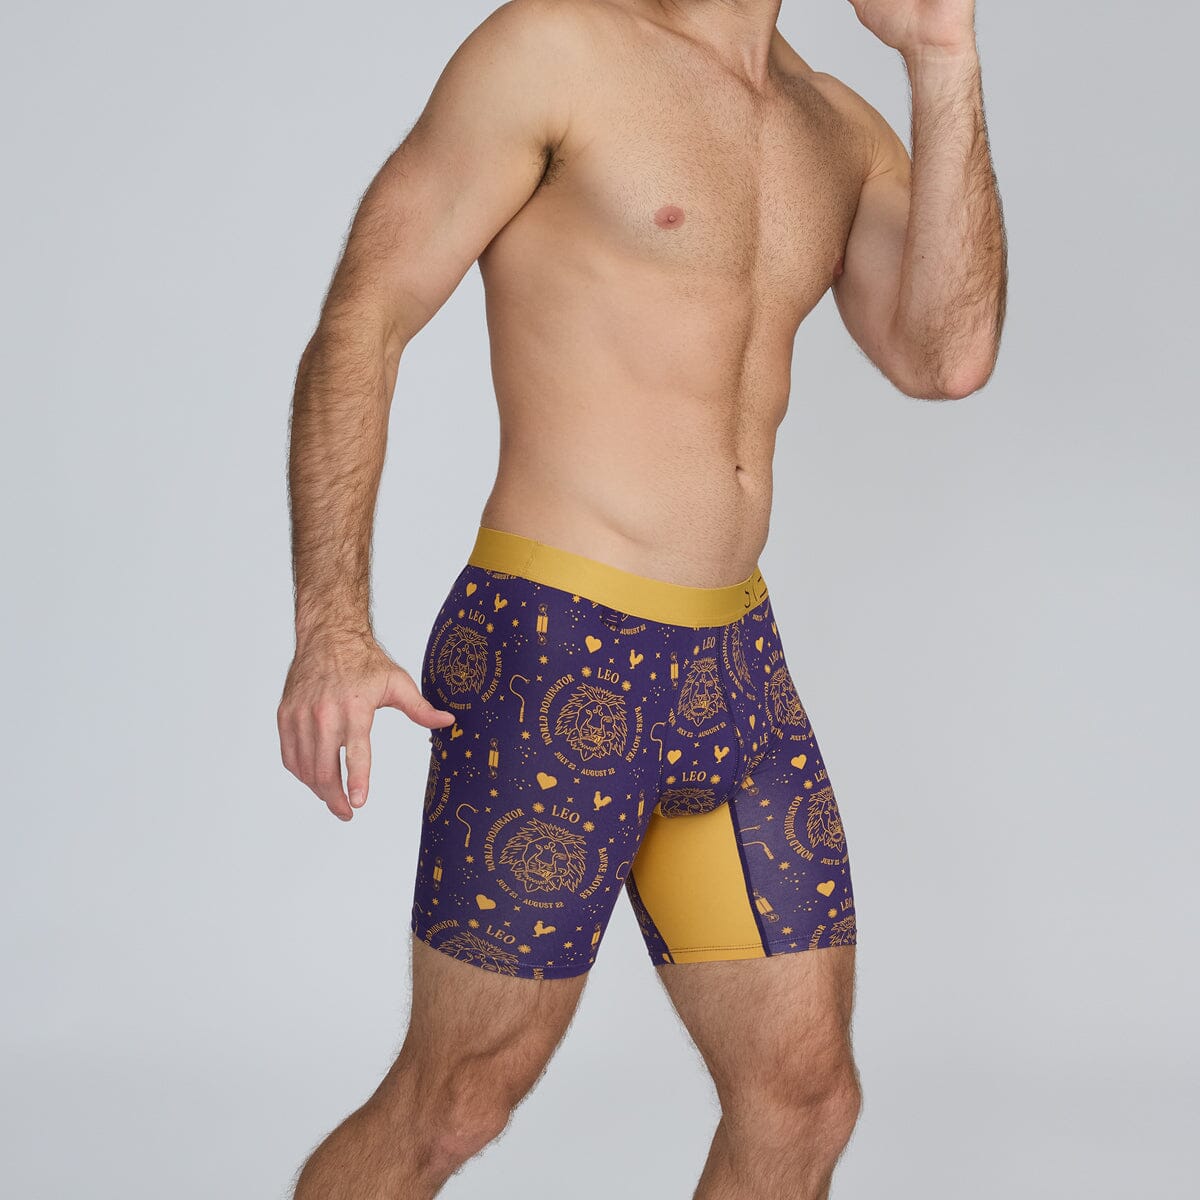 Boxer Brief - Leo - Bamboo Underwear